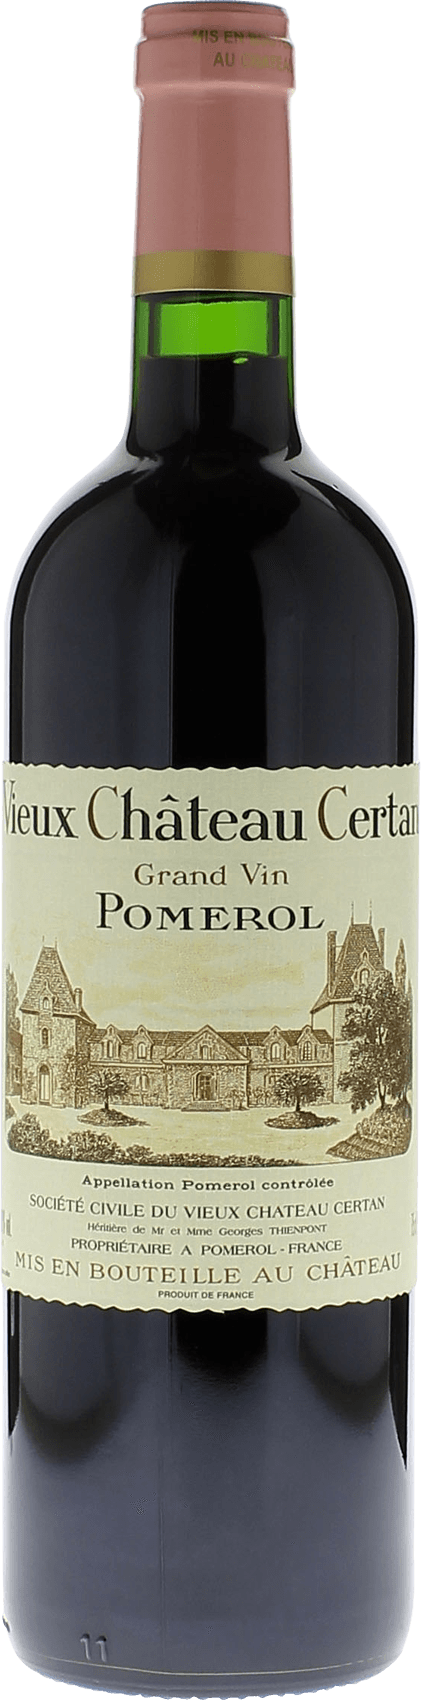 Vieux chteau  certan 1981  Pomerol, Bordeaux rouge